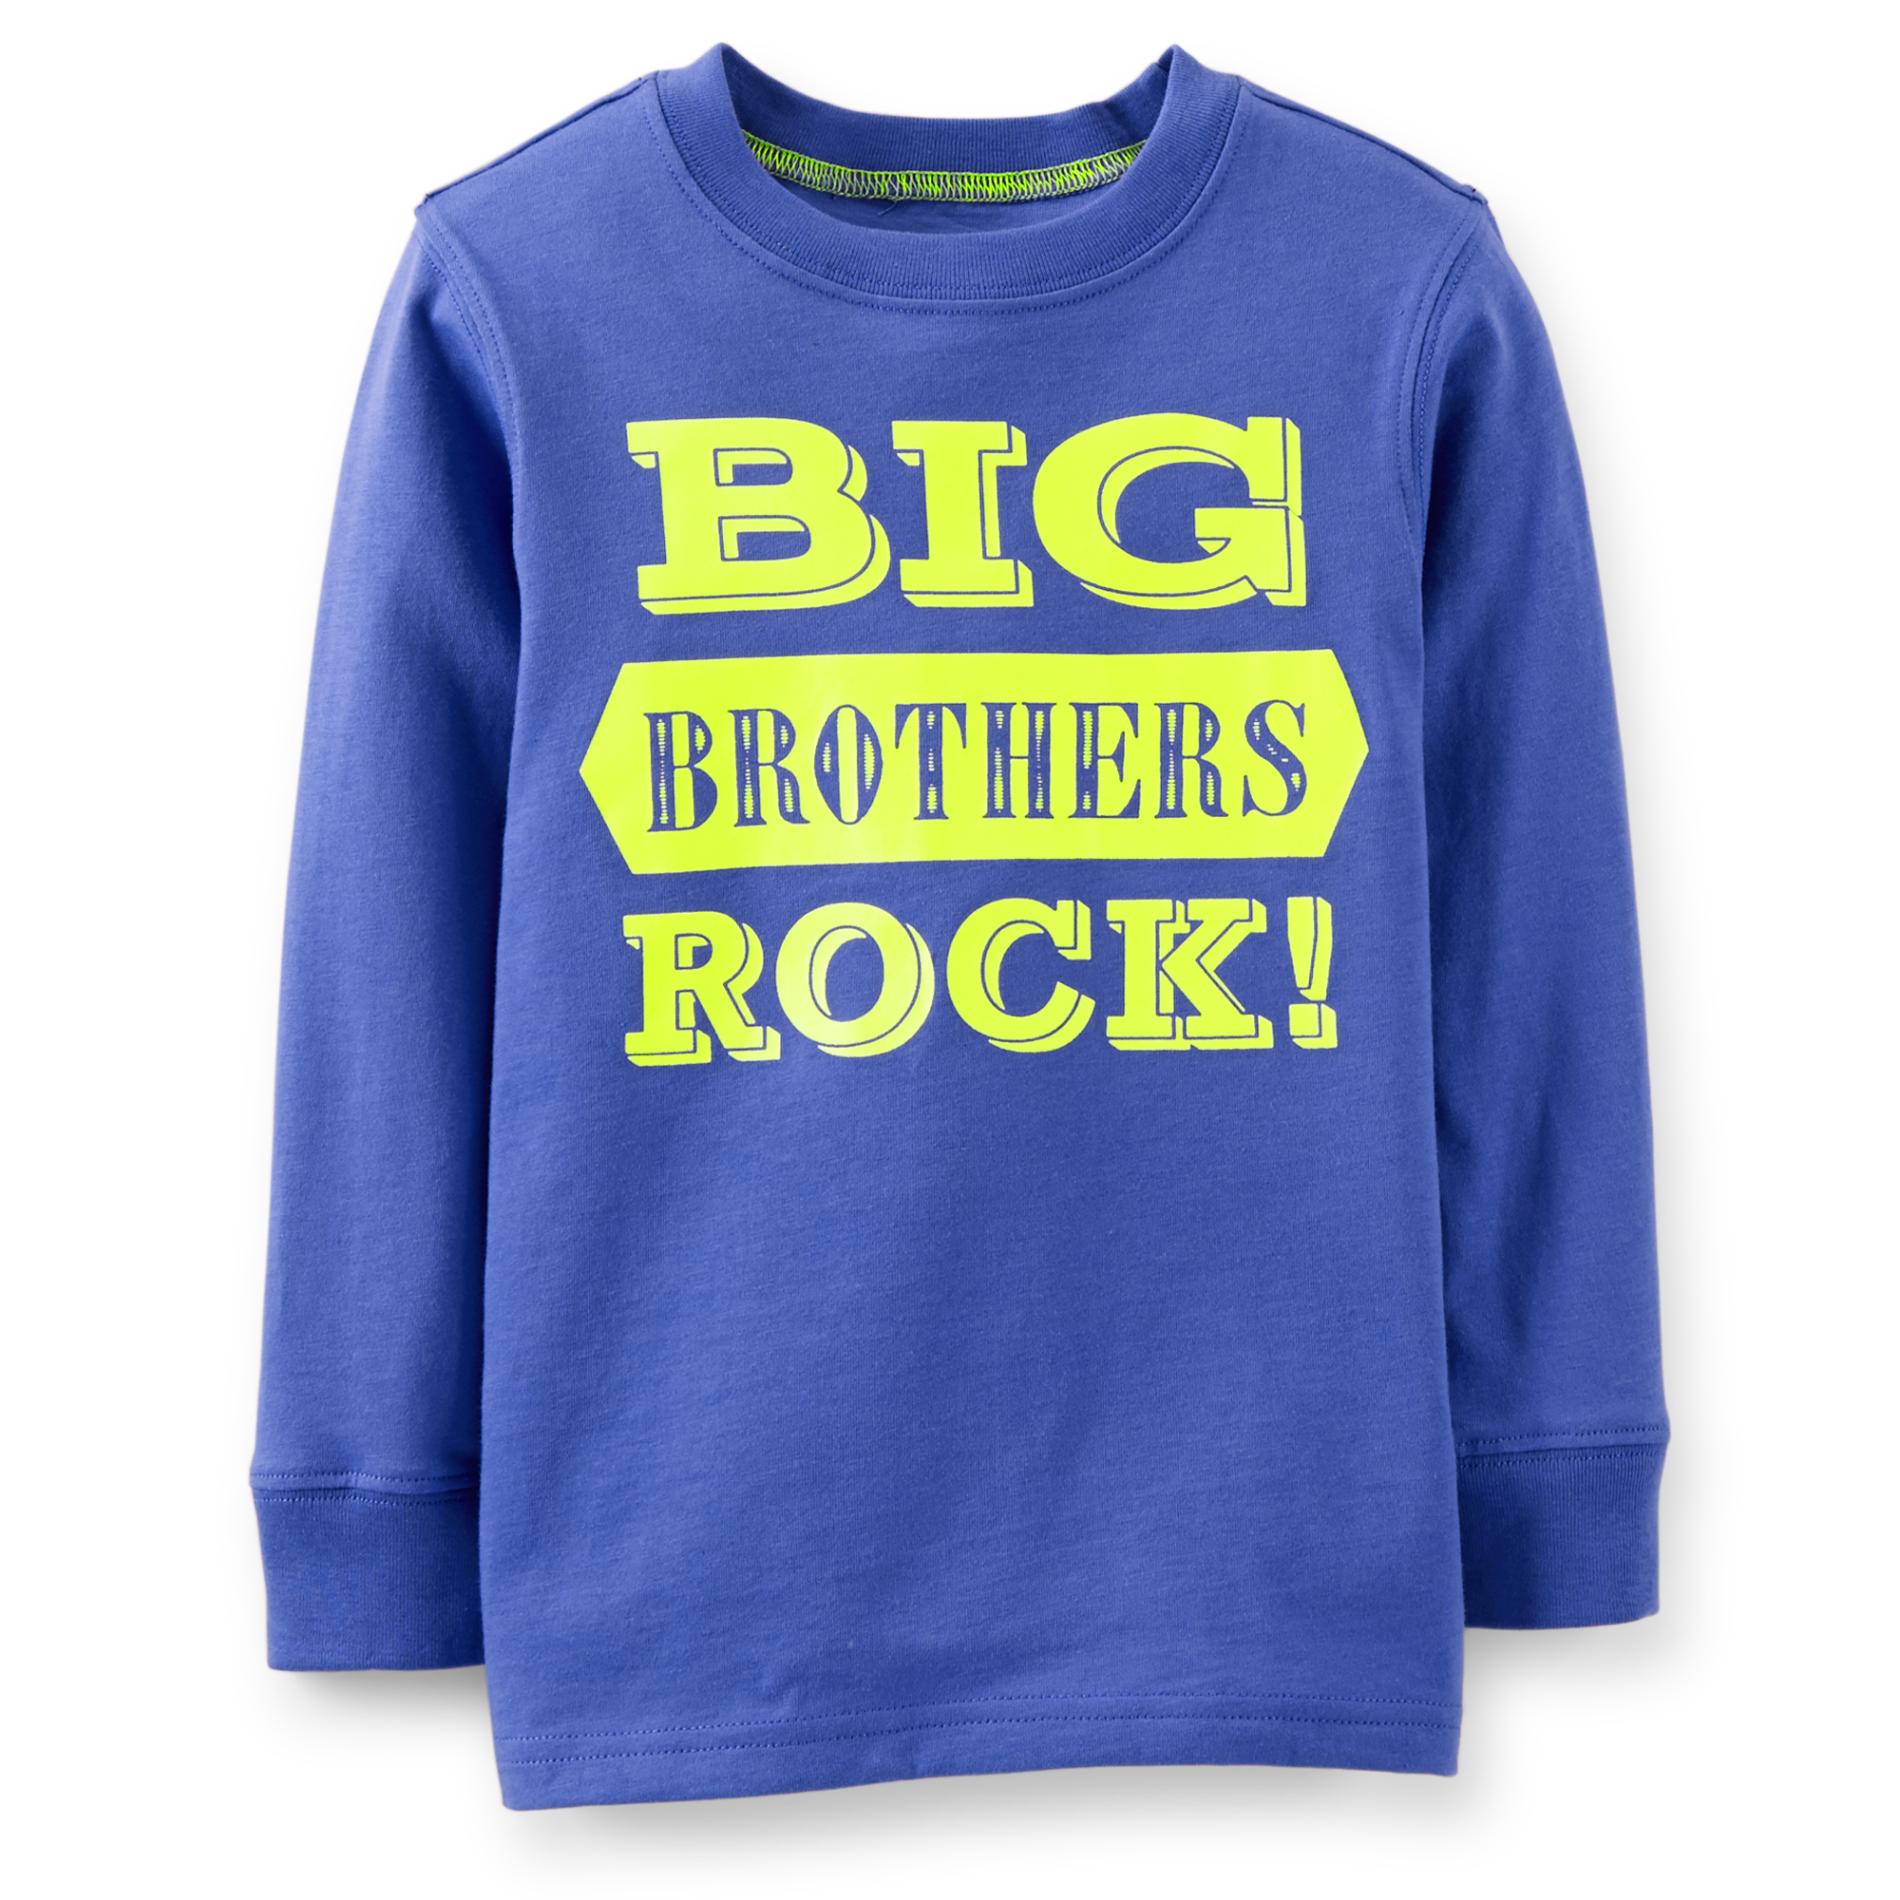 Carter's Boy's Graphic Sweatshirt - Big Brothers Rock